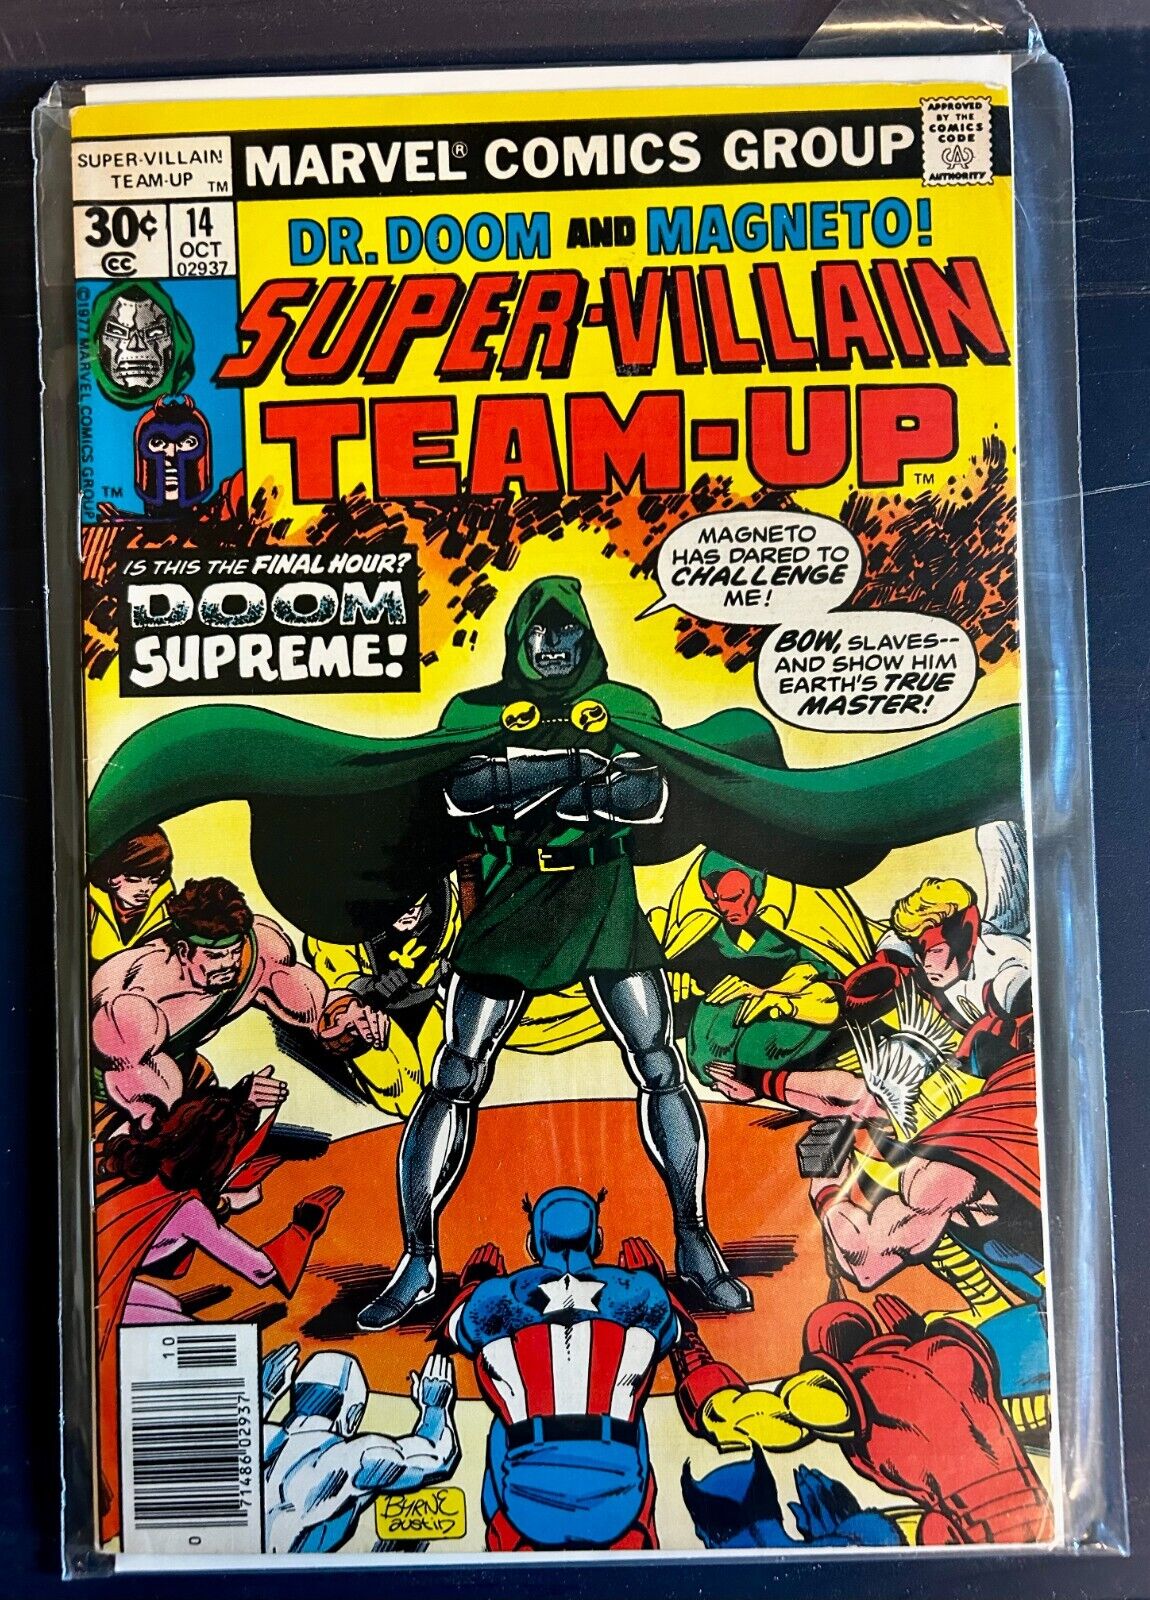 Super Villain Team-Up #14 - Magneto/Dr. Doom - Great Shape